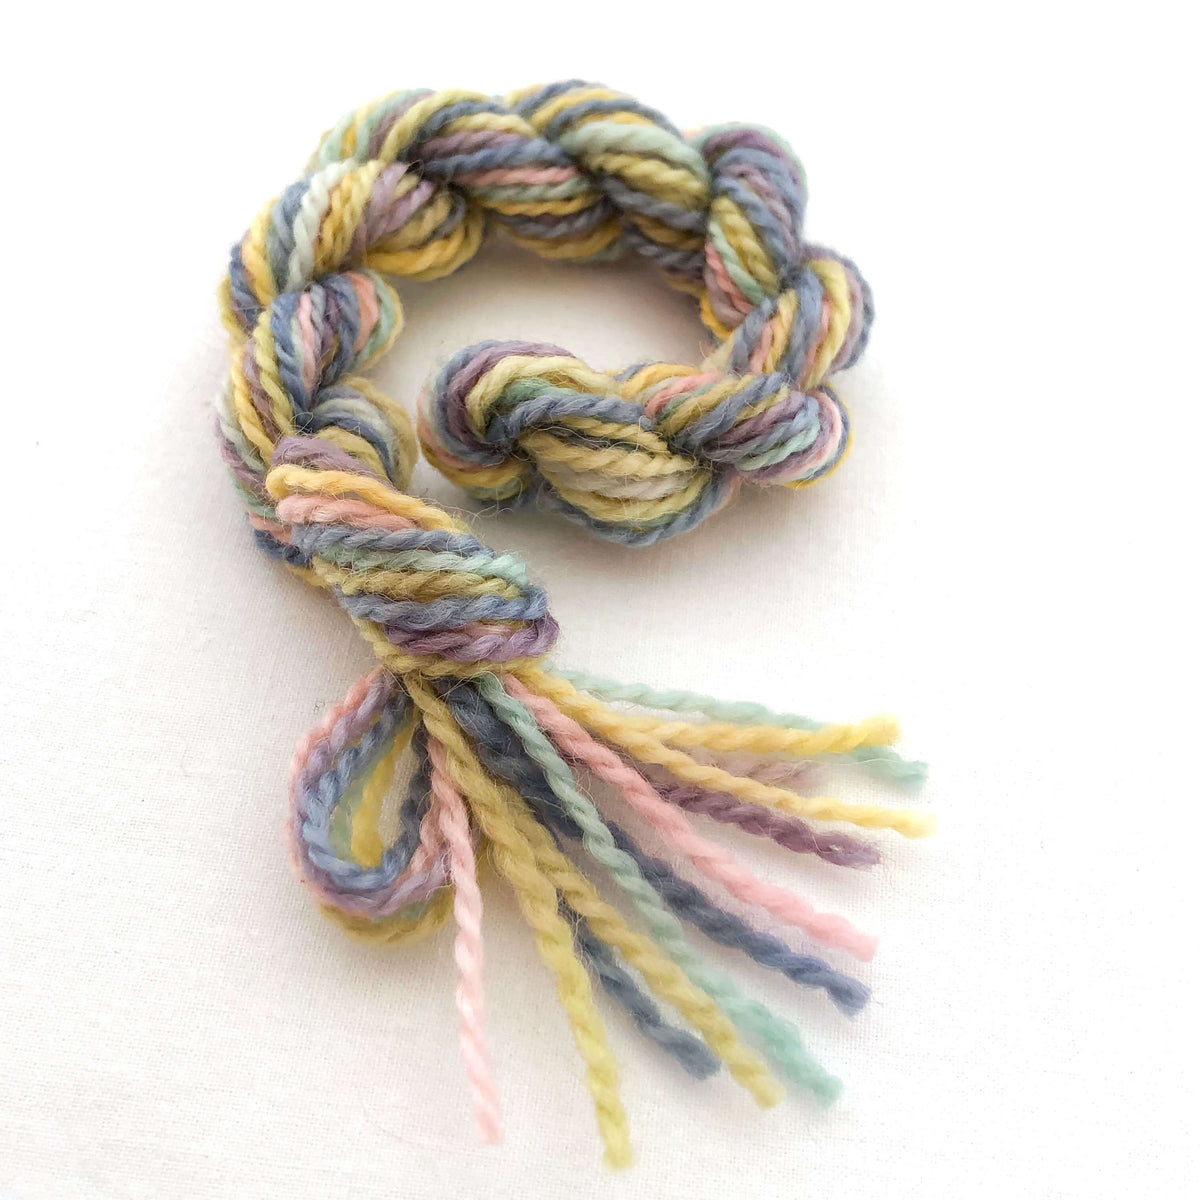 Mini Yarn Skein - Alpaca Blend - Succulent Colors